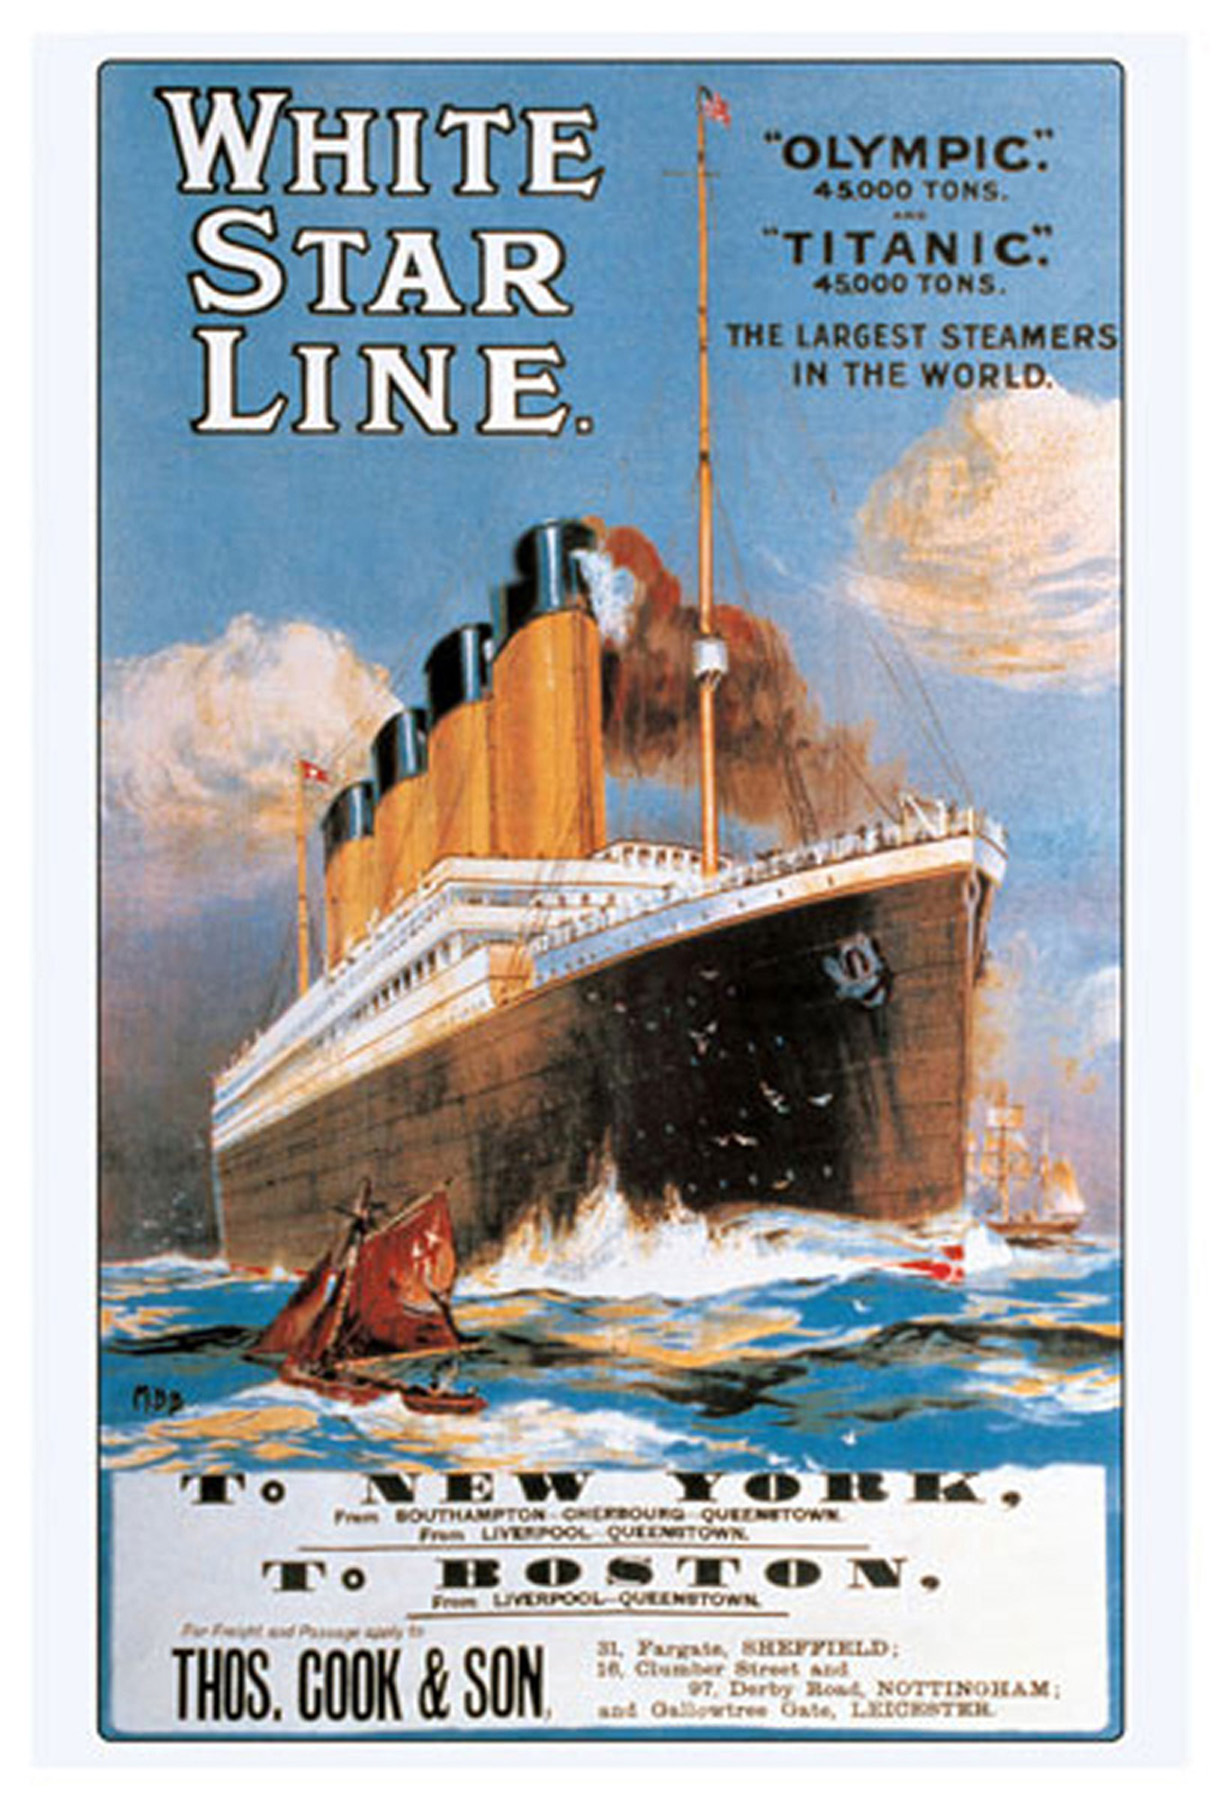 Titanic - White Line Star